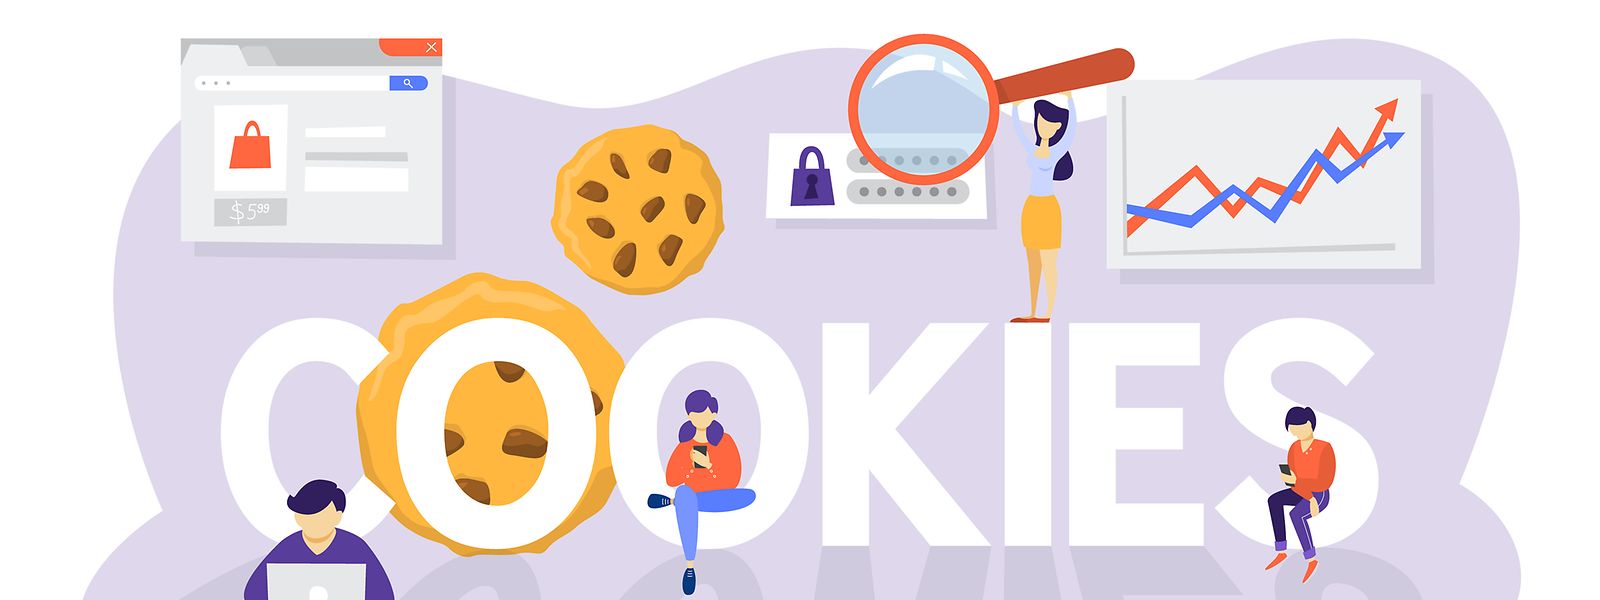 Les cookies sont, au sens premier du terme, des biscuits et, sur Internet, un moyen efficace pour l'industrie de la publicité. 